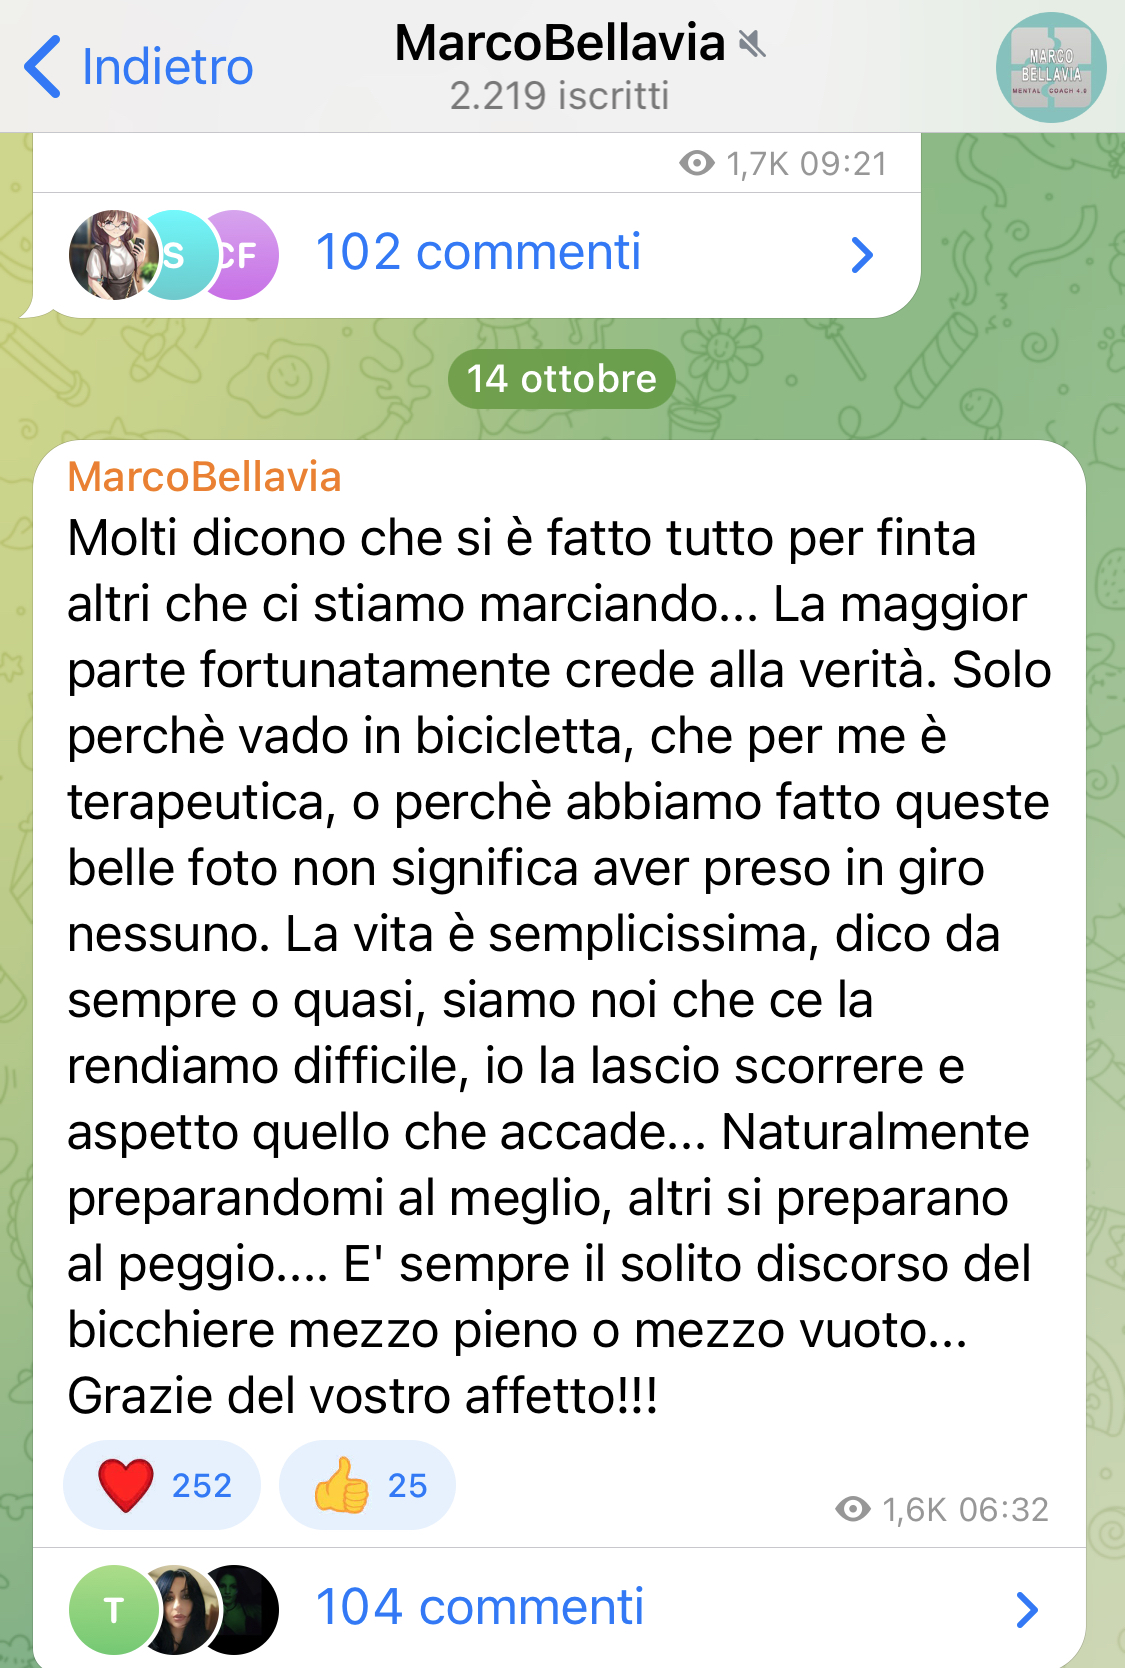 Marco Bellavia - Telegram- accuse